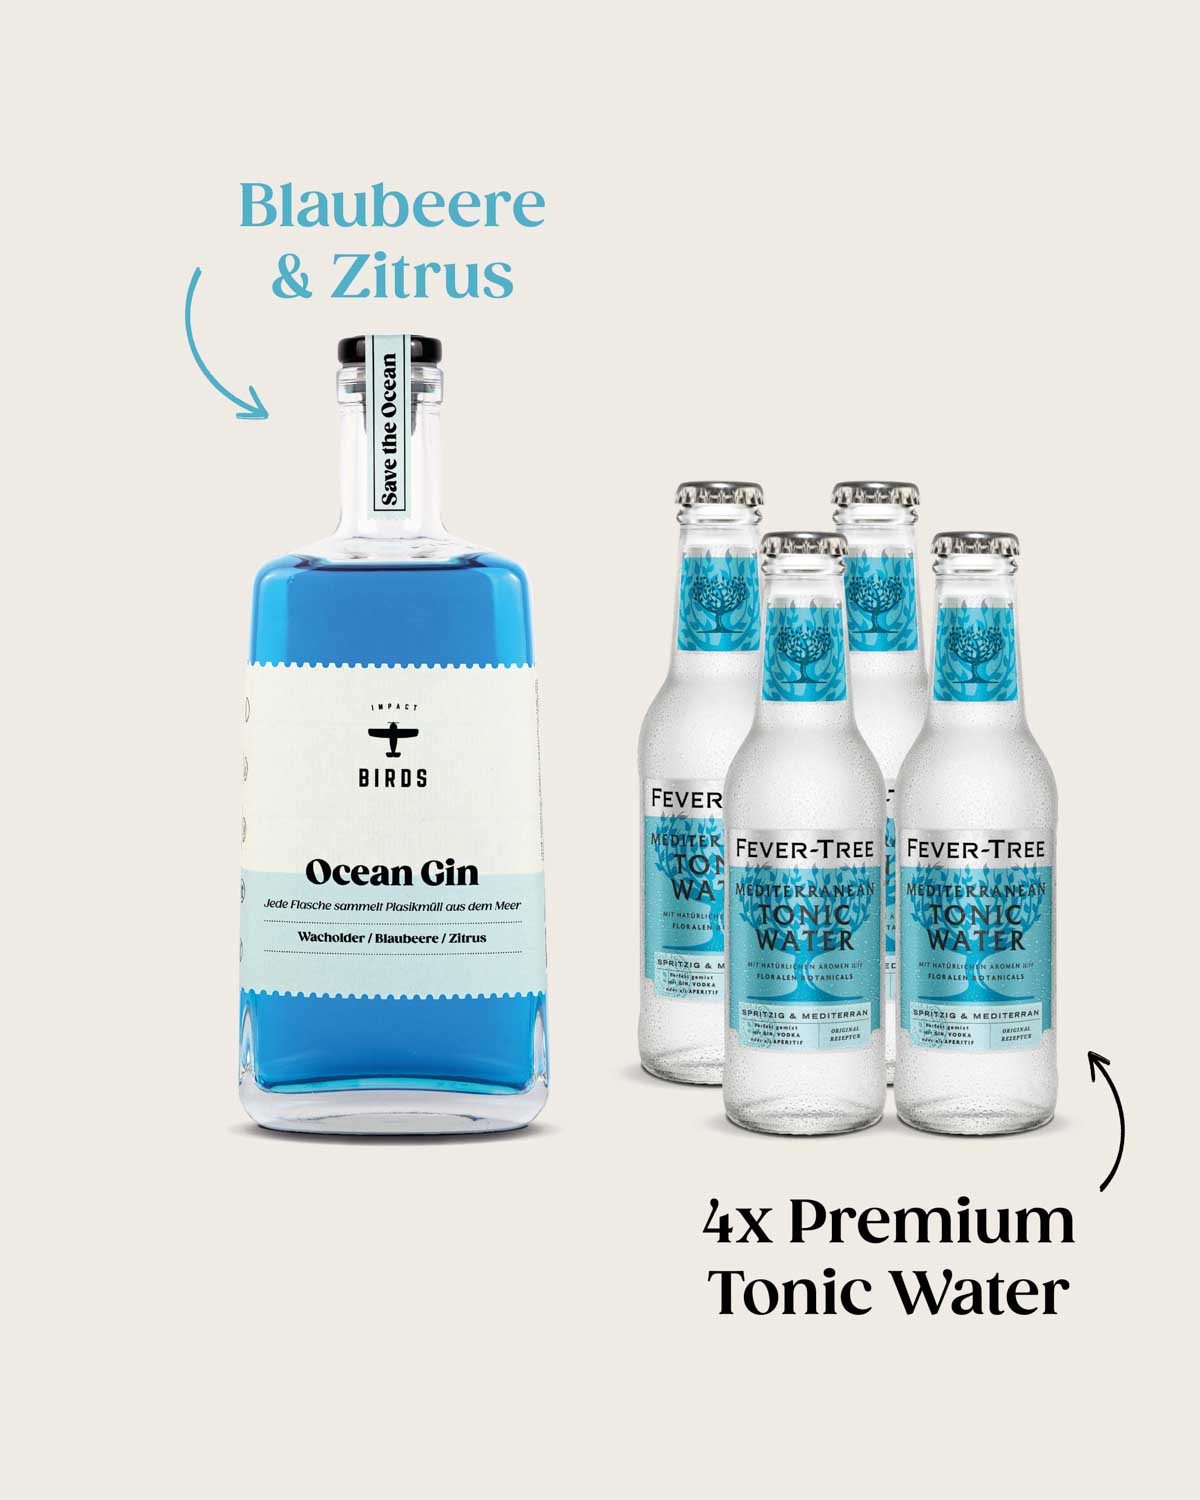 Der Ocean Gin im Starter Pack. Eine Flasche Ocean Gin mit Blaubeere und Zitrus Geschmack und viermal Premium Tonic Water.